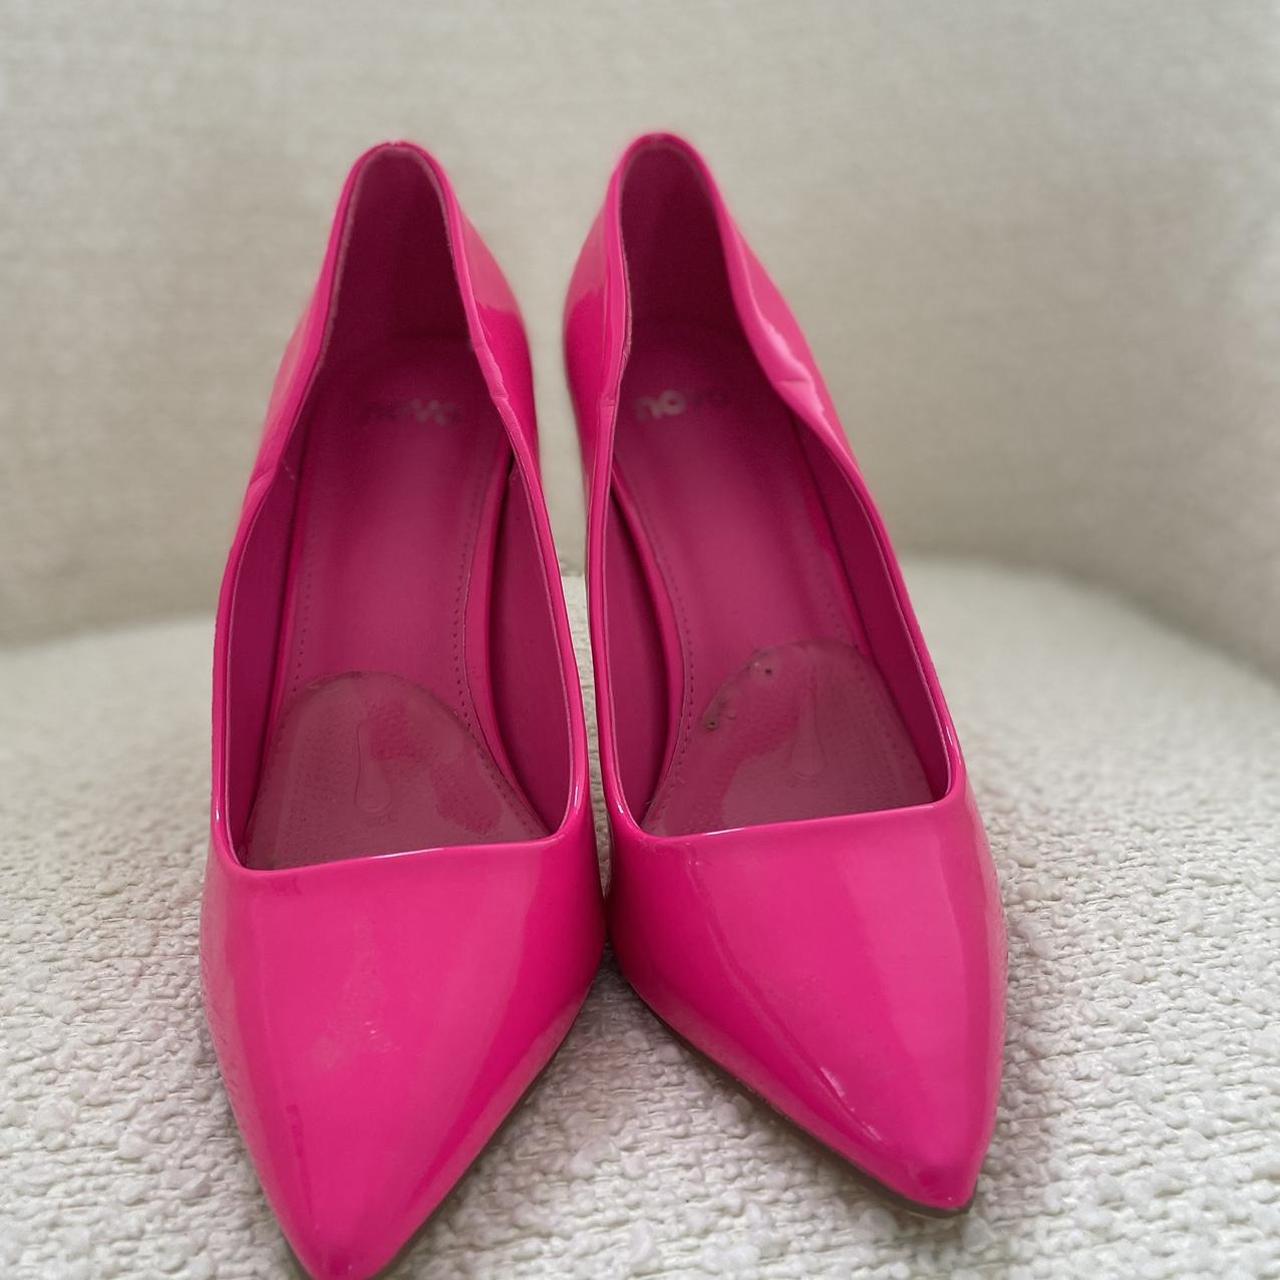 Novo Indya Heels hot pink Size 38 UK 5.5 - Depop